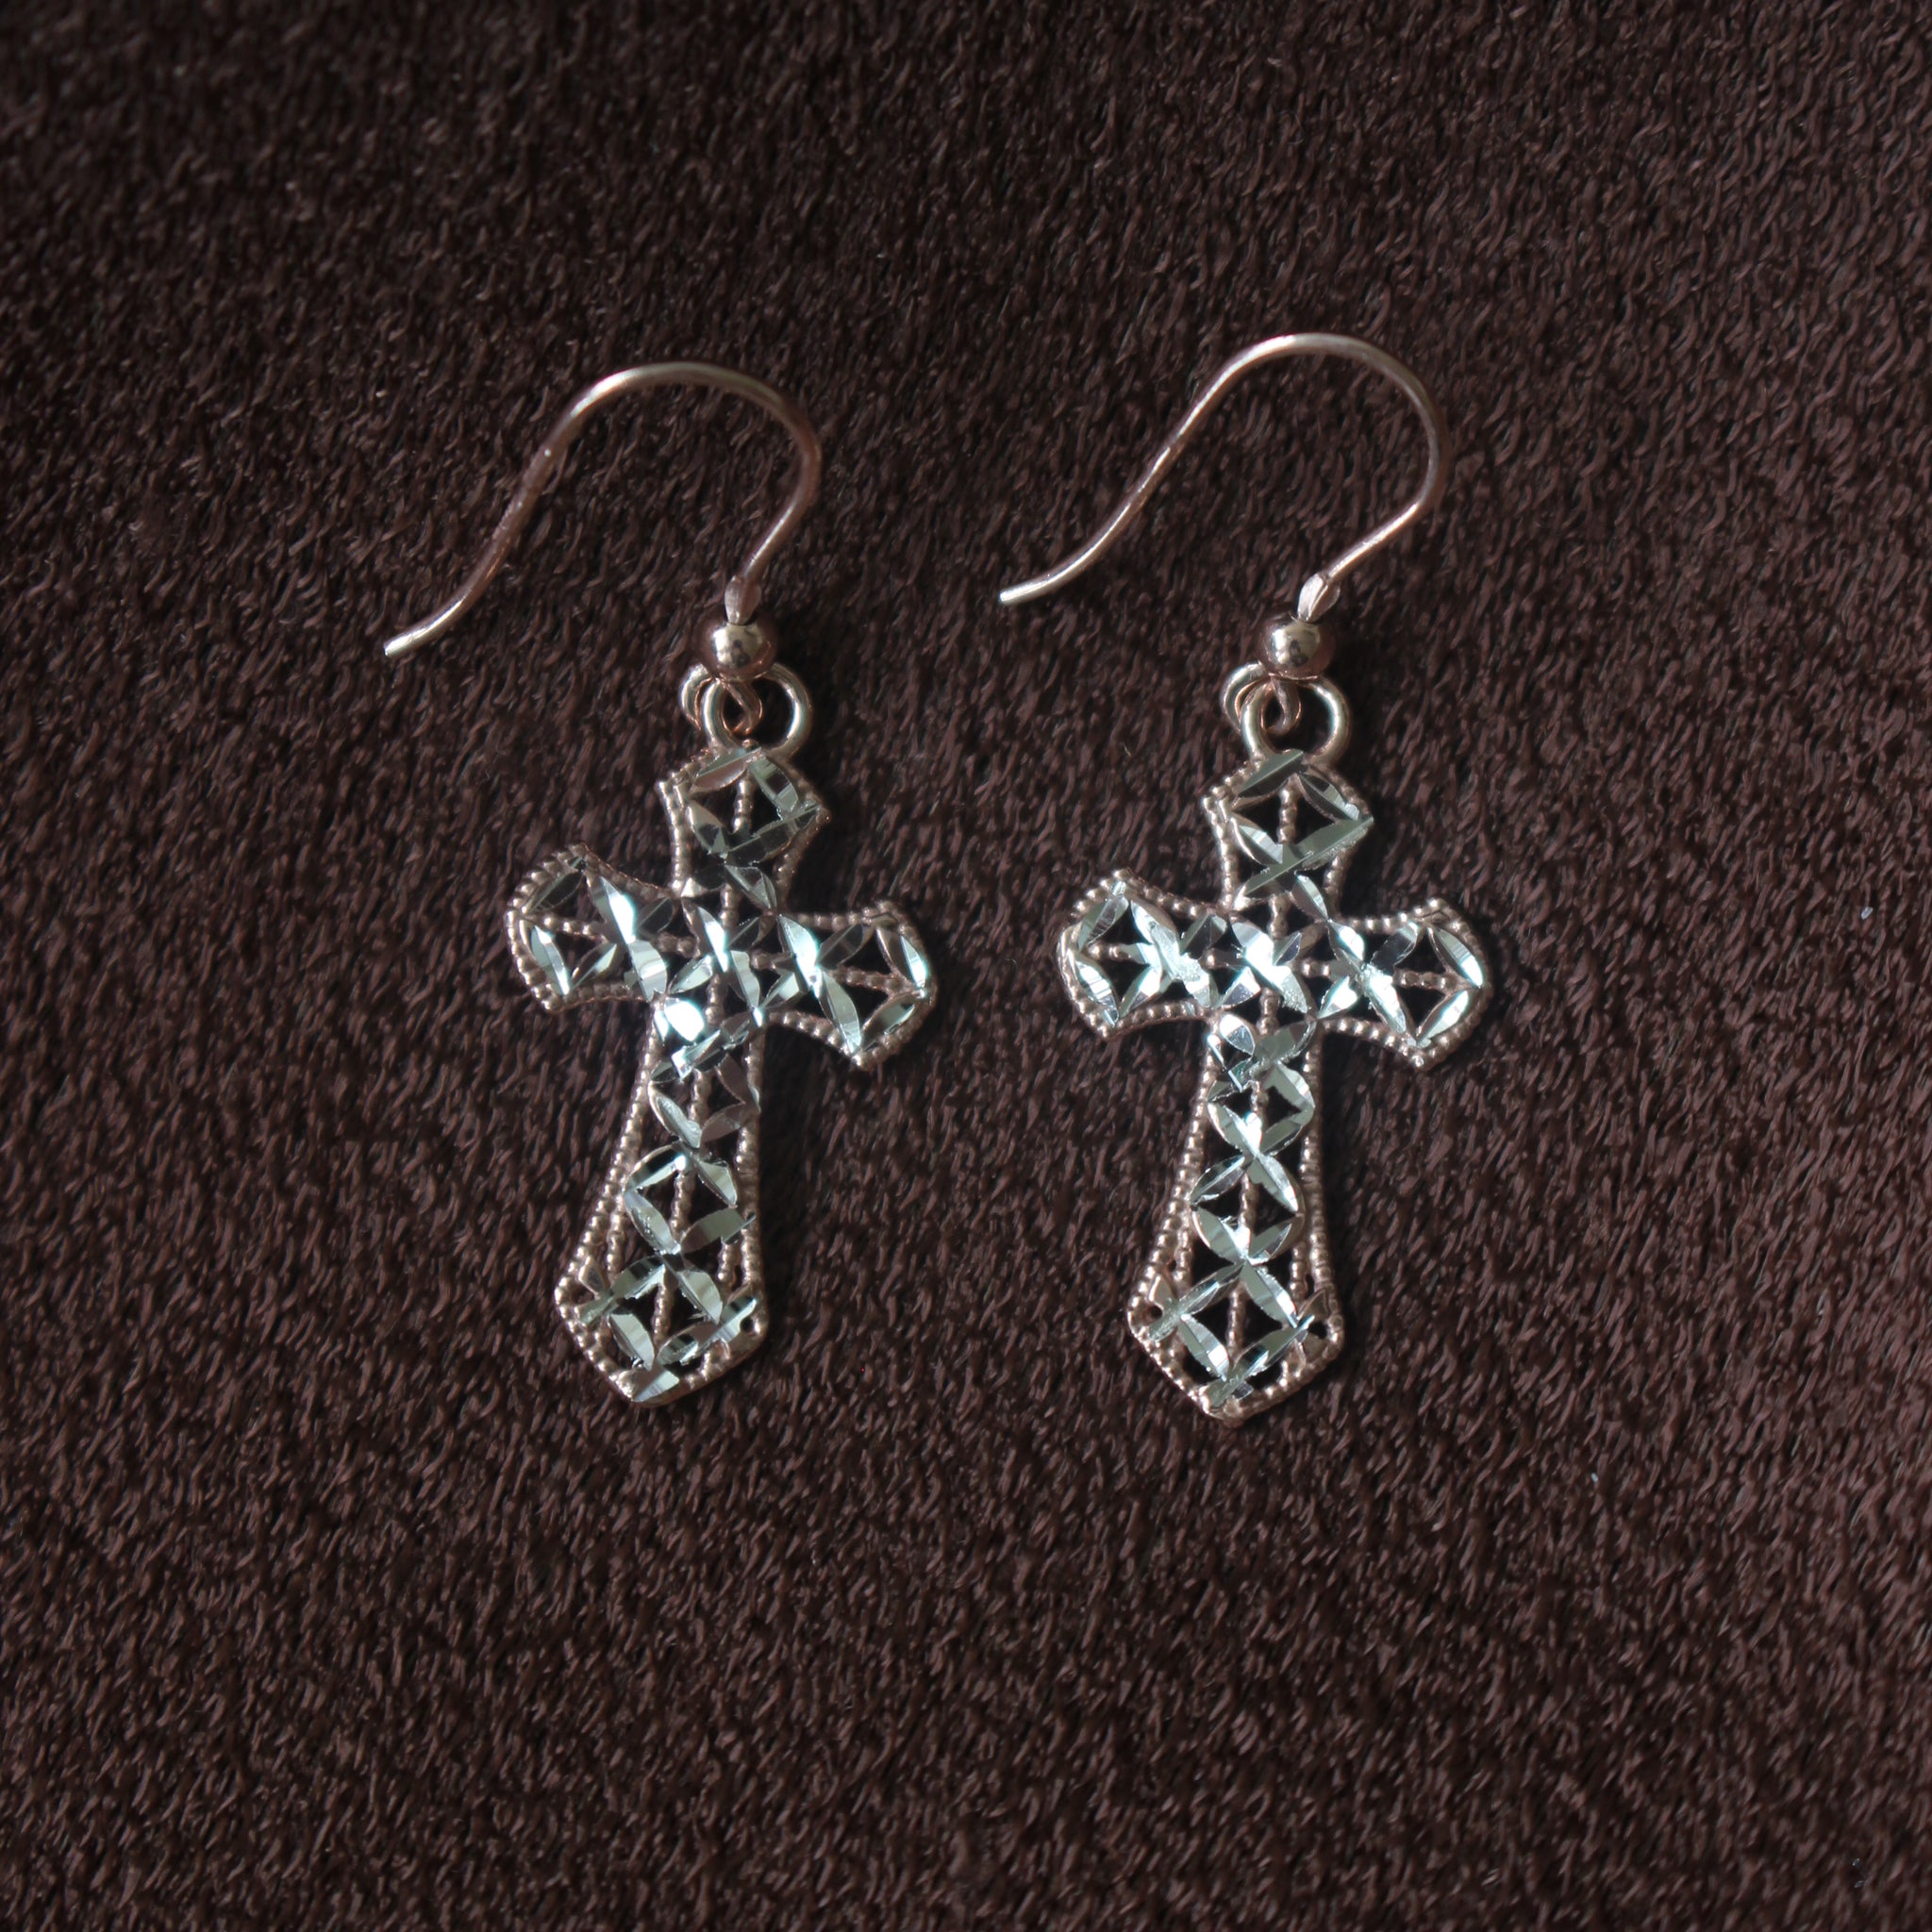 Cross Earrings - 925 Italian Silver Rose Gold Plated Filigree Cross Earrings